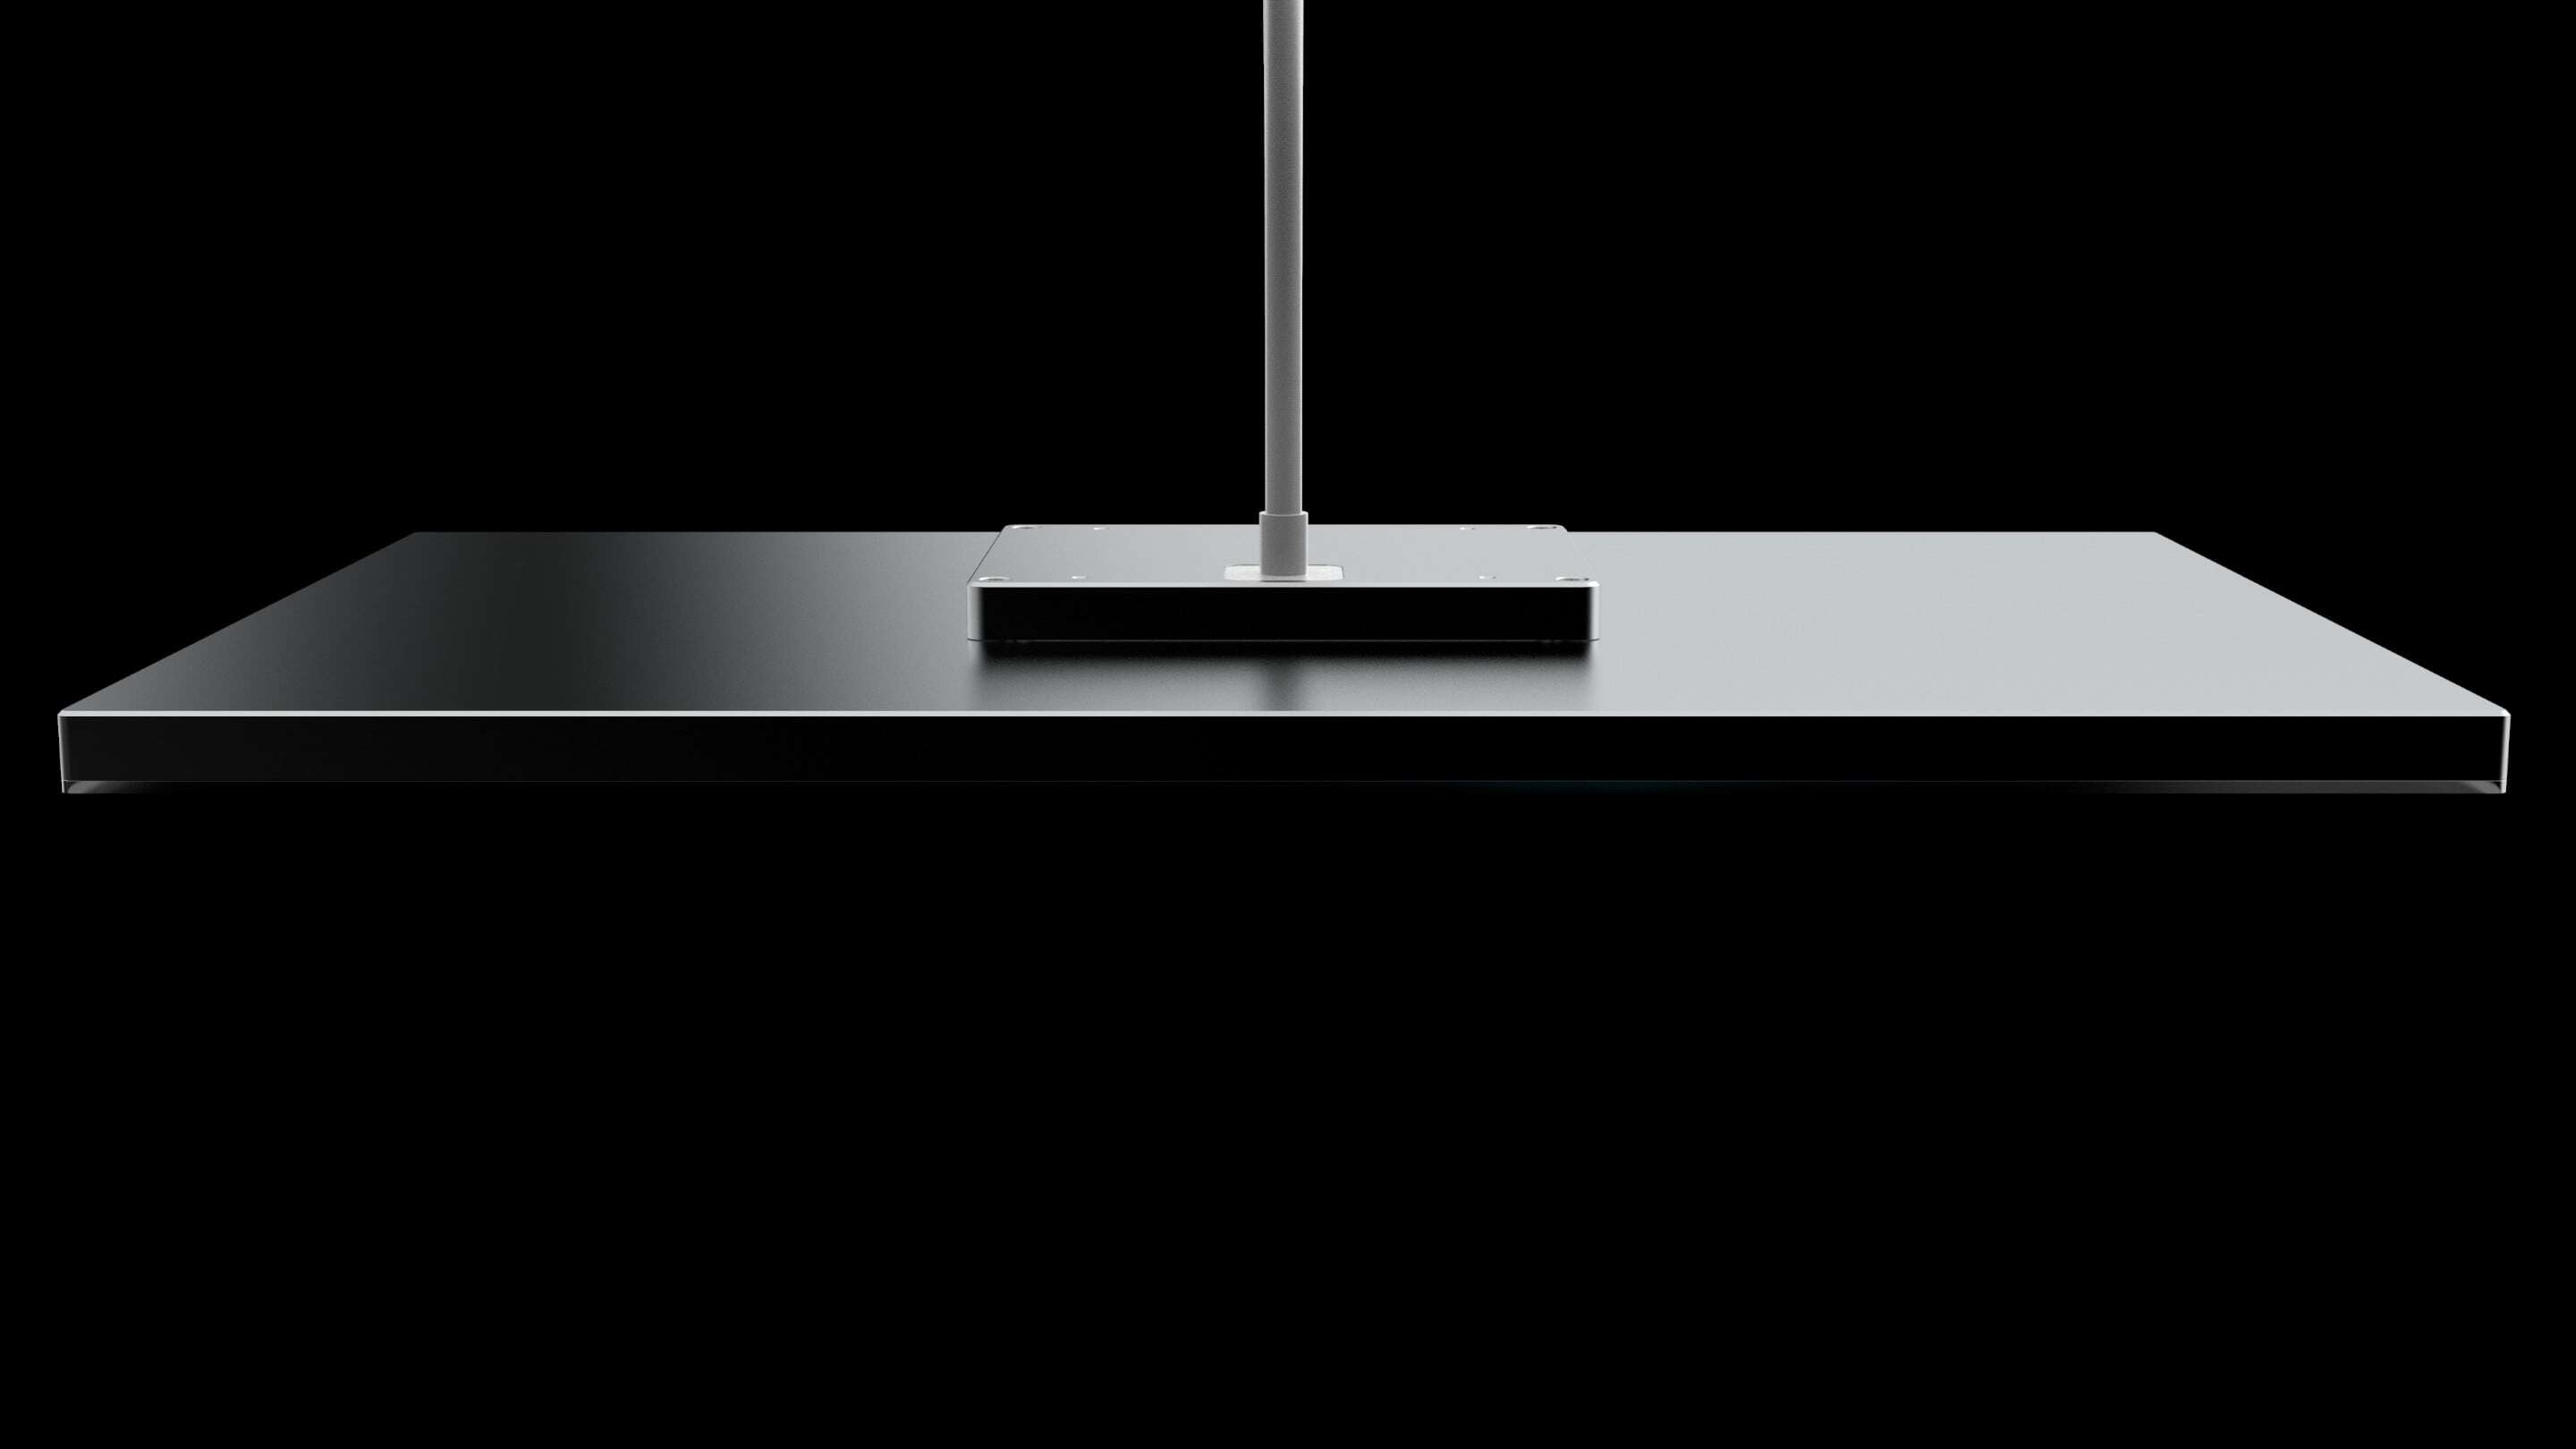 Design - Concevoir un câble une table rectangulaire noire avec un poteau